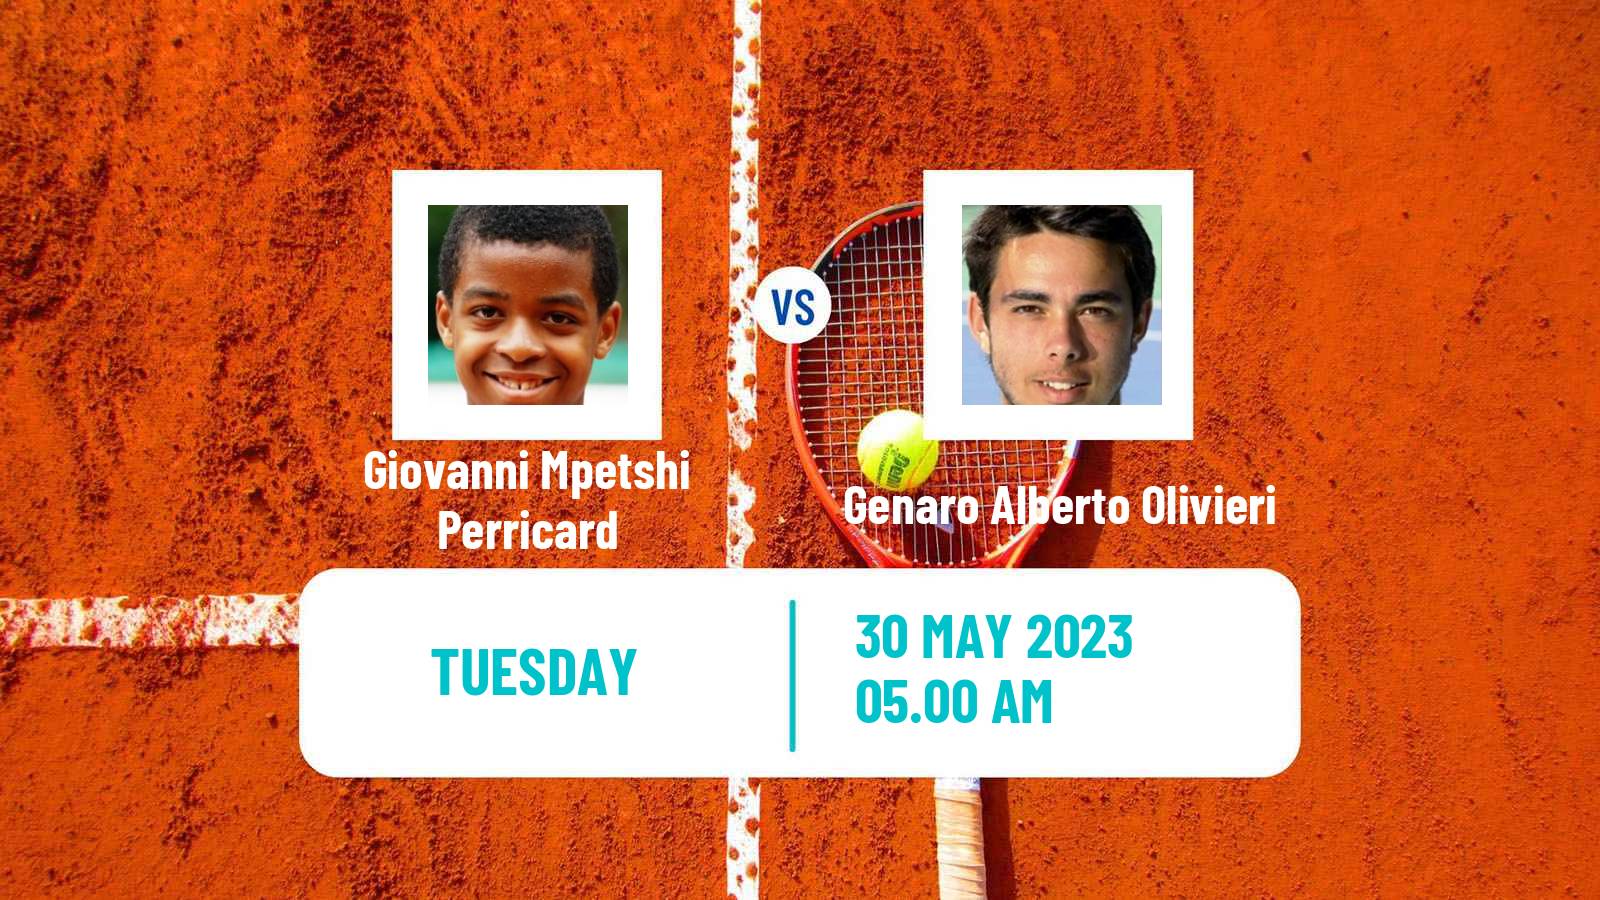 Tennis ATP Roland Garros Giovanni Mpetshi Perricard - Genaro Alberto Olivieri